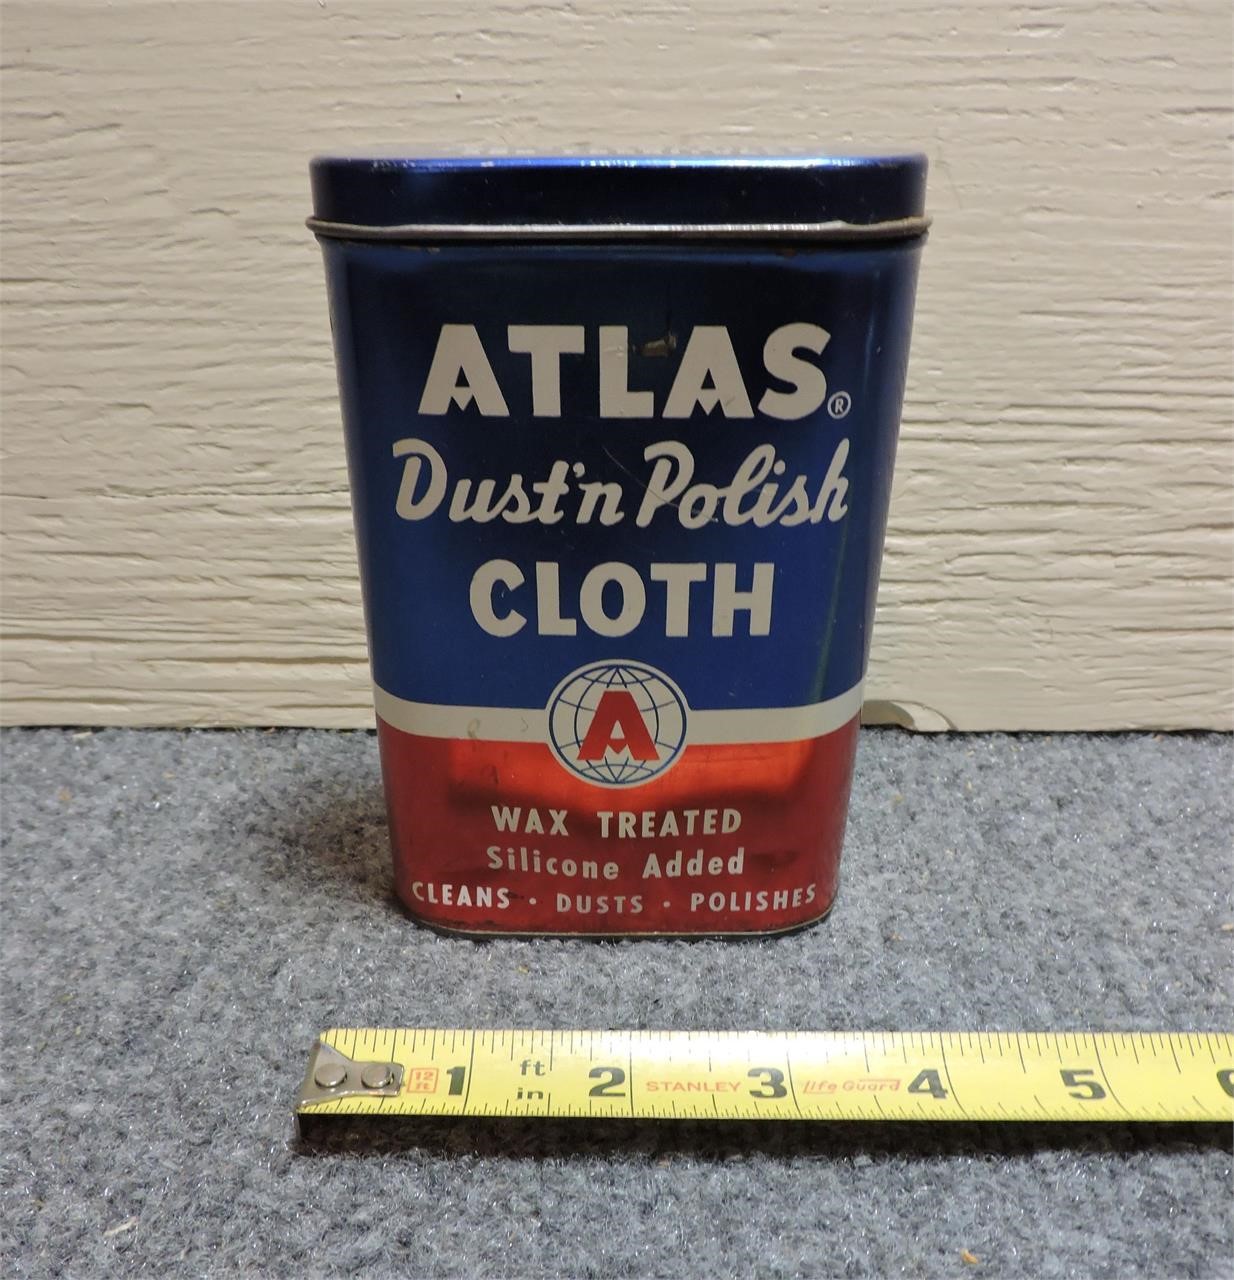 Atlas, Dust'n Polish Cloth Tin